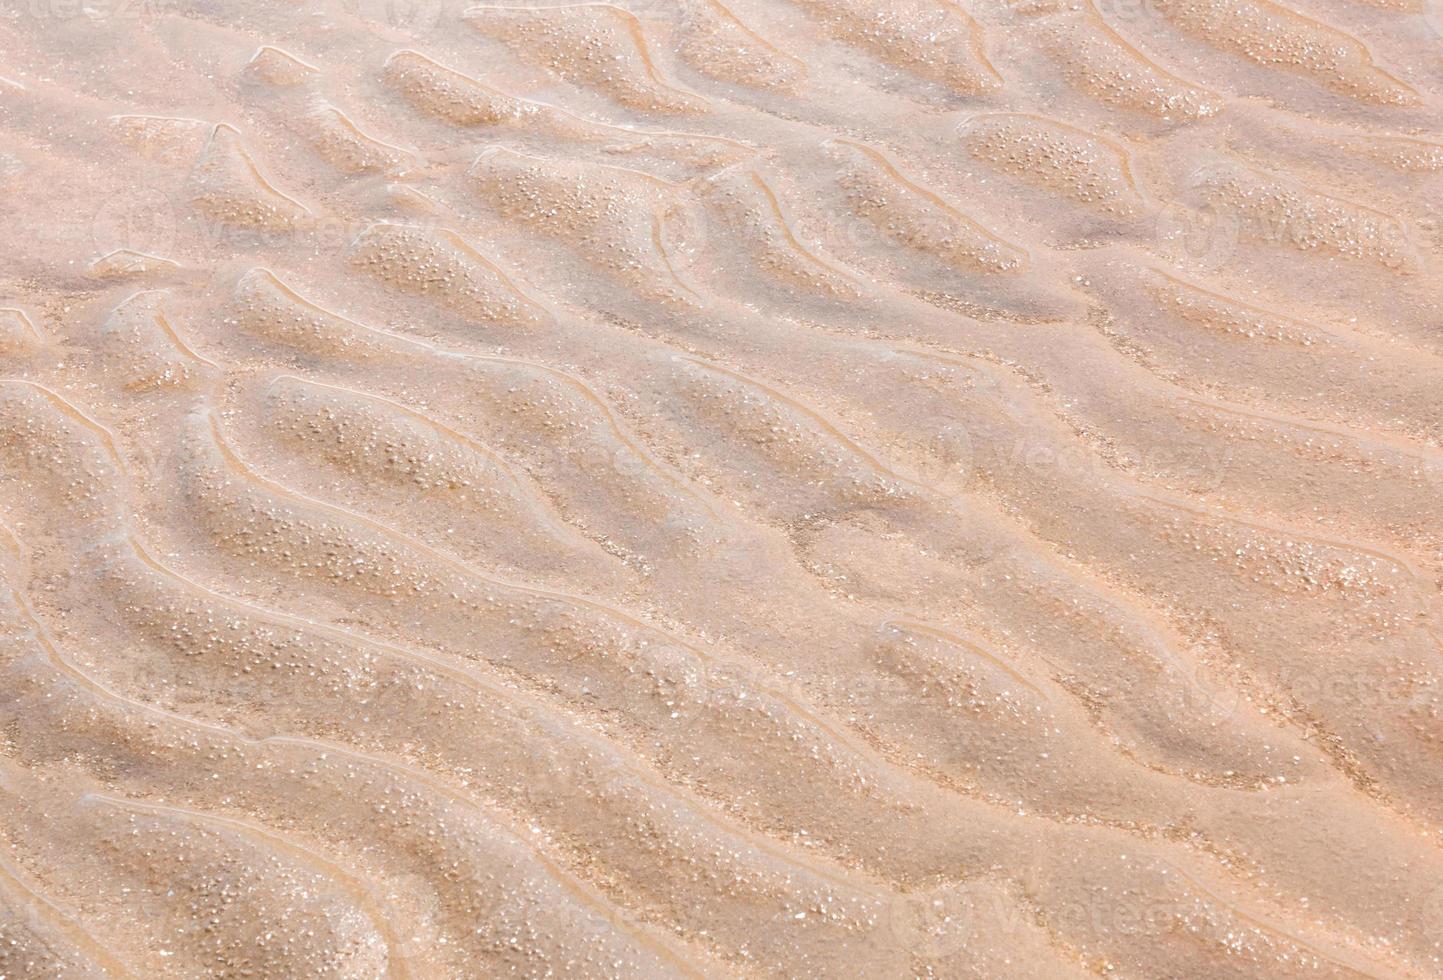 bei Ebbe auf feinem Sand winken foto